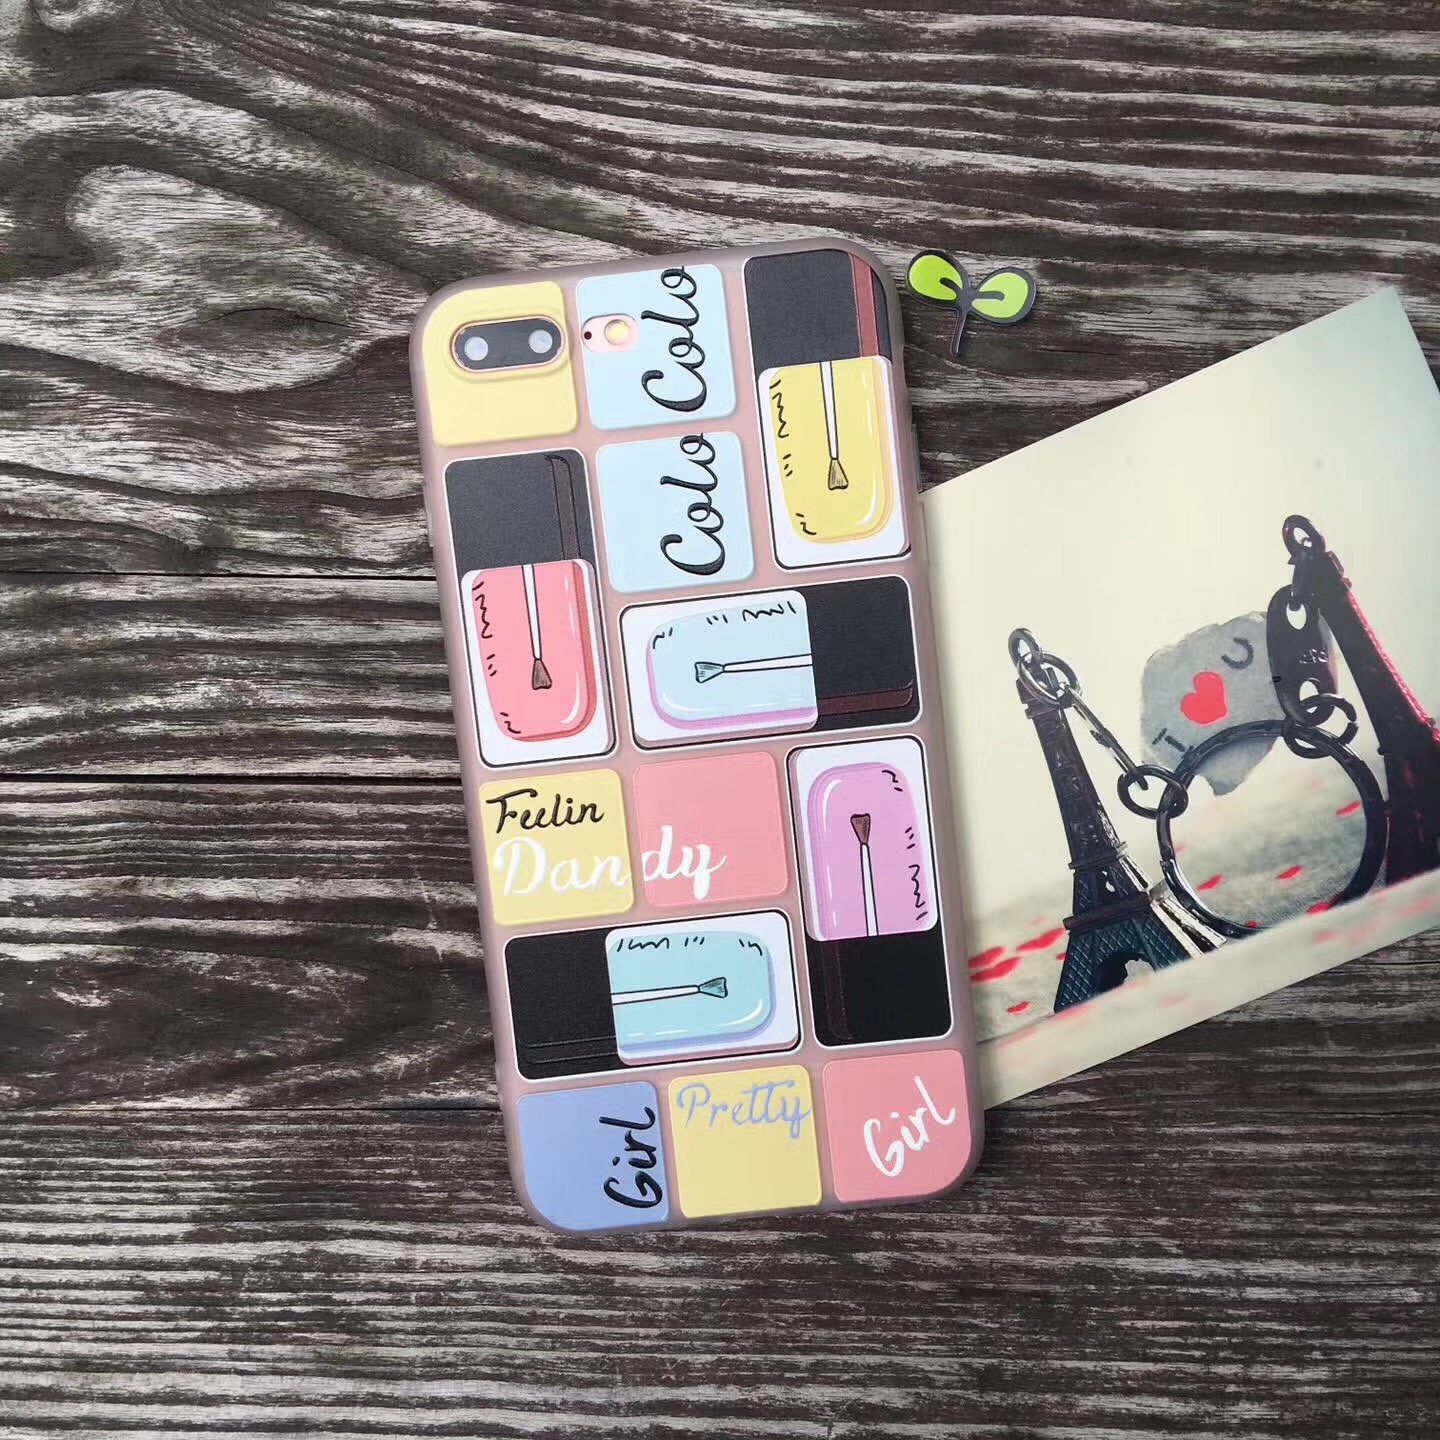 iPhoneXコスメ化粧品メイク道具揃えスマホケース口紅アイフォン8plus/8携帯カバー唇ファンデーションiPhone8マニキュア